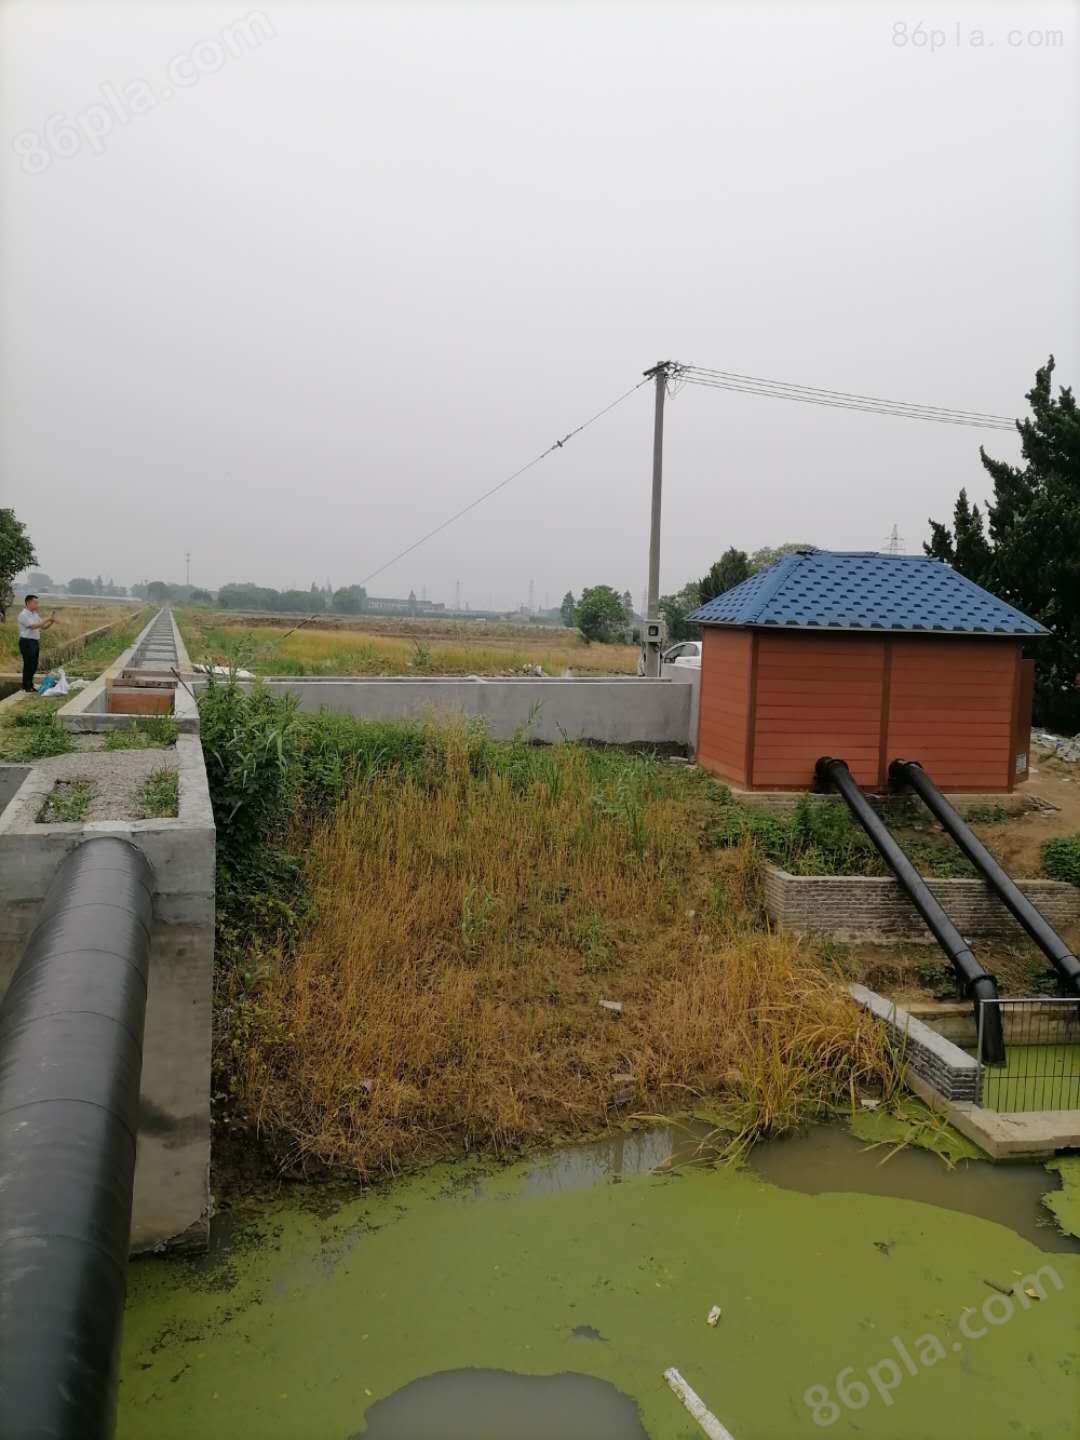 洁夫森农田灌溉泵房 为农村灌溉出一份力